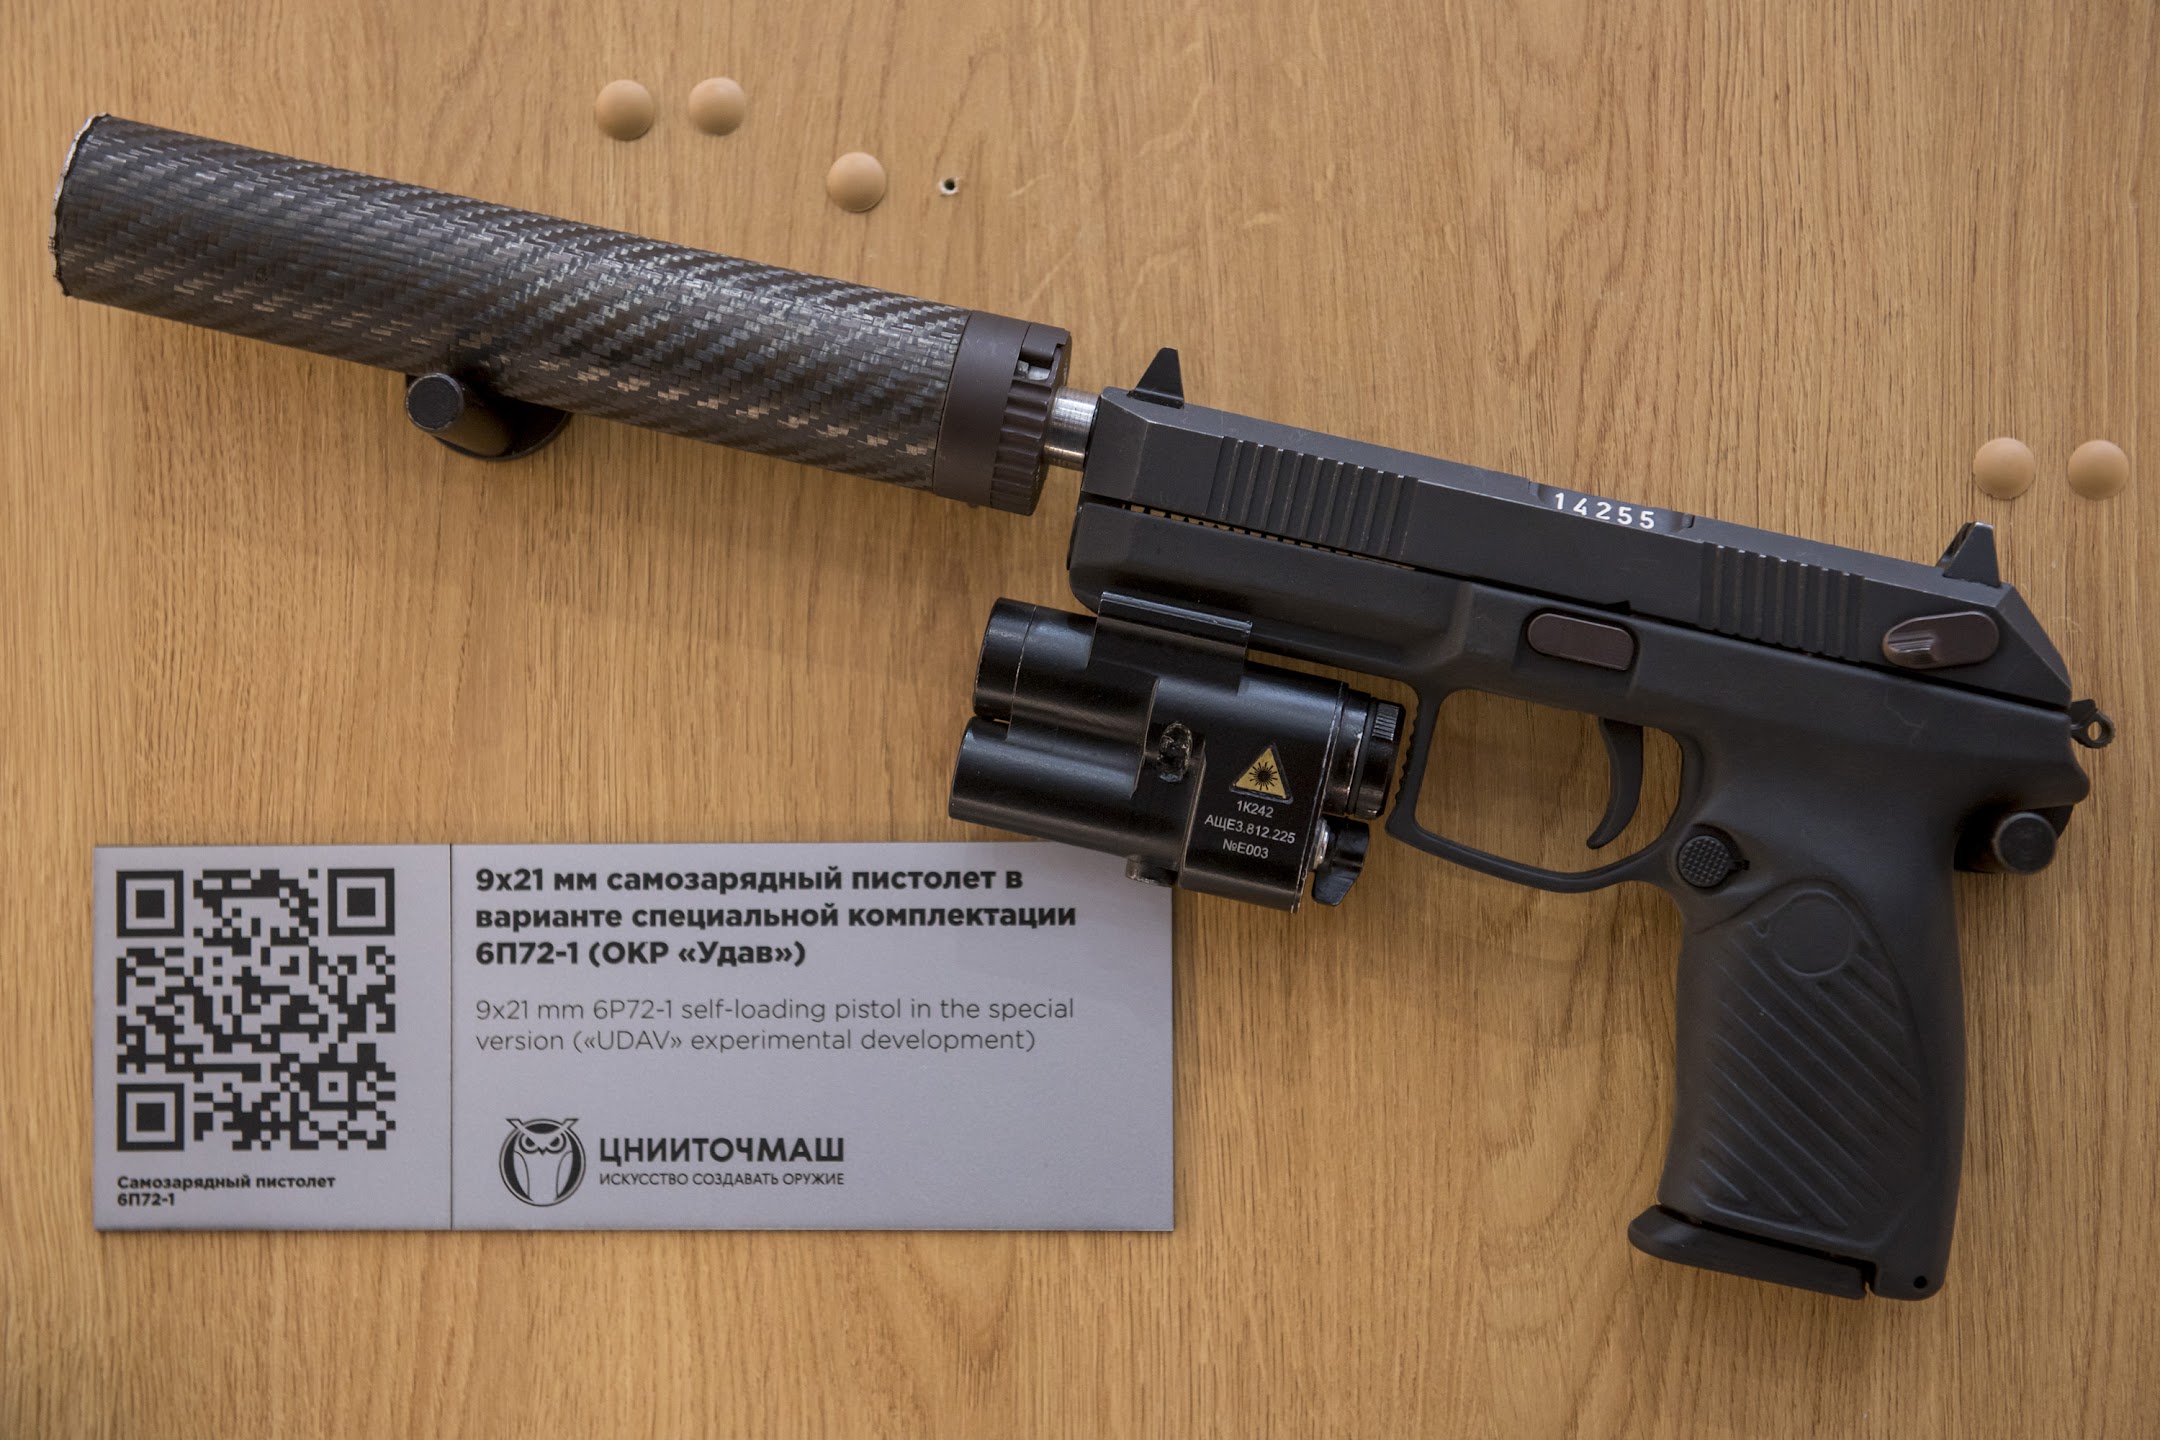 ЦНИИточмаш поставил Минобороны РФ первую партию боеприпасов к пистолету 6П72